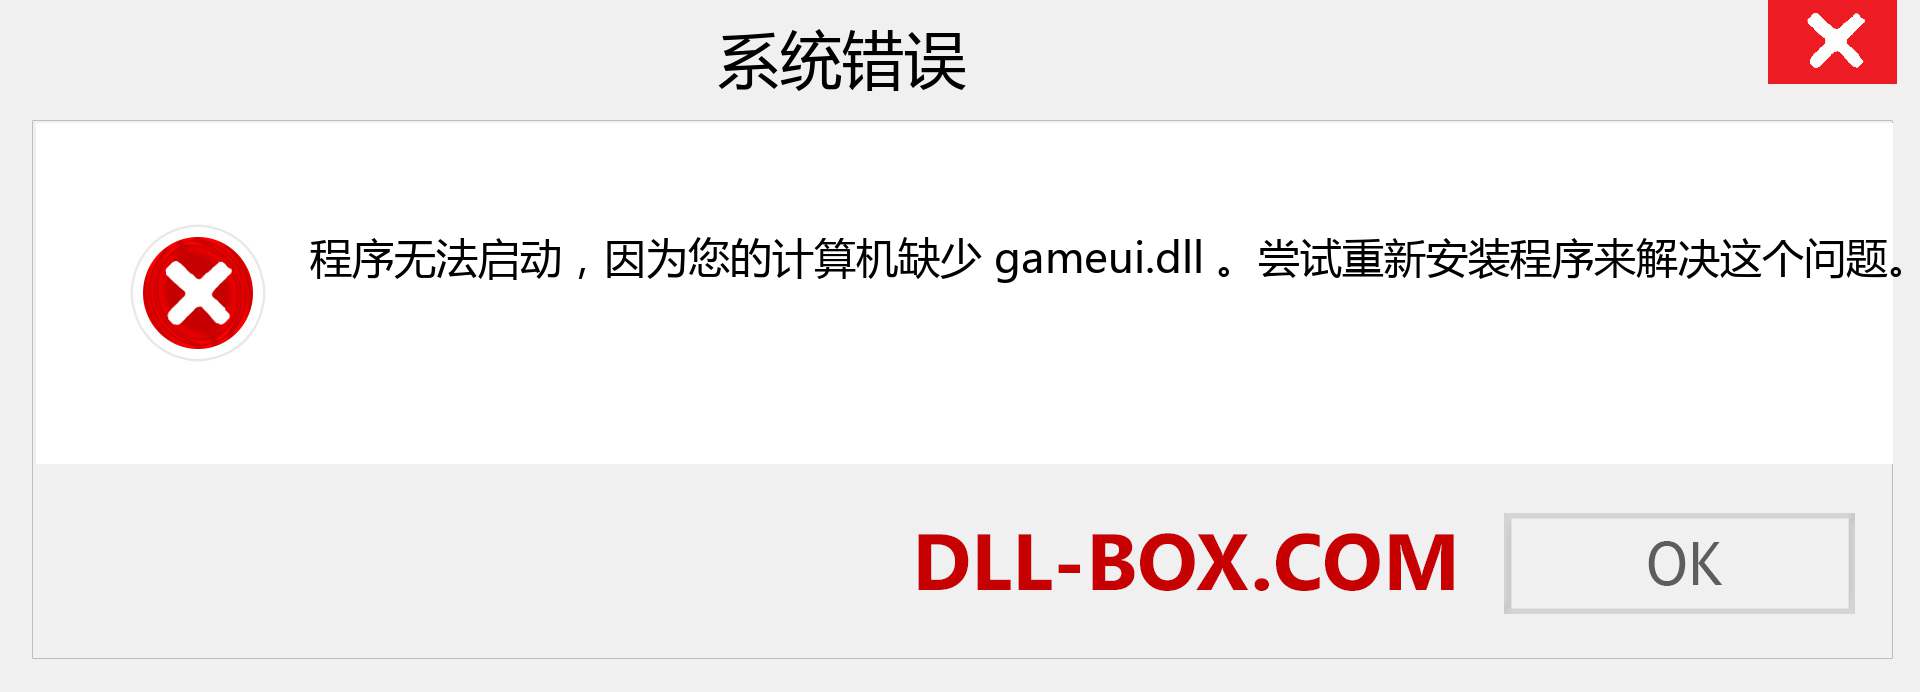 gameui.dll 文件丢失？。 适用于 Windows 7、8、10 的下载 - 修复 Windows、照片、图像上的 gameui dll 丢失错误